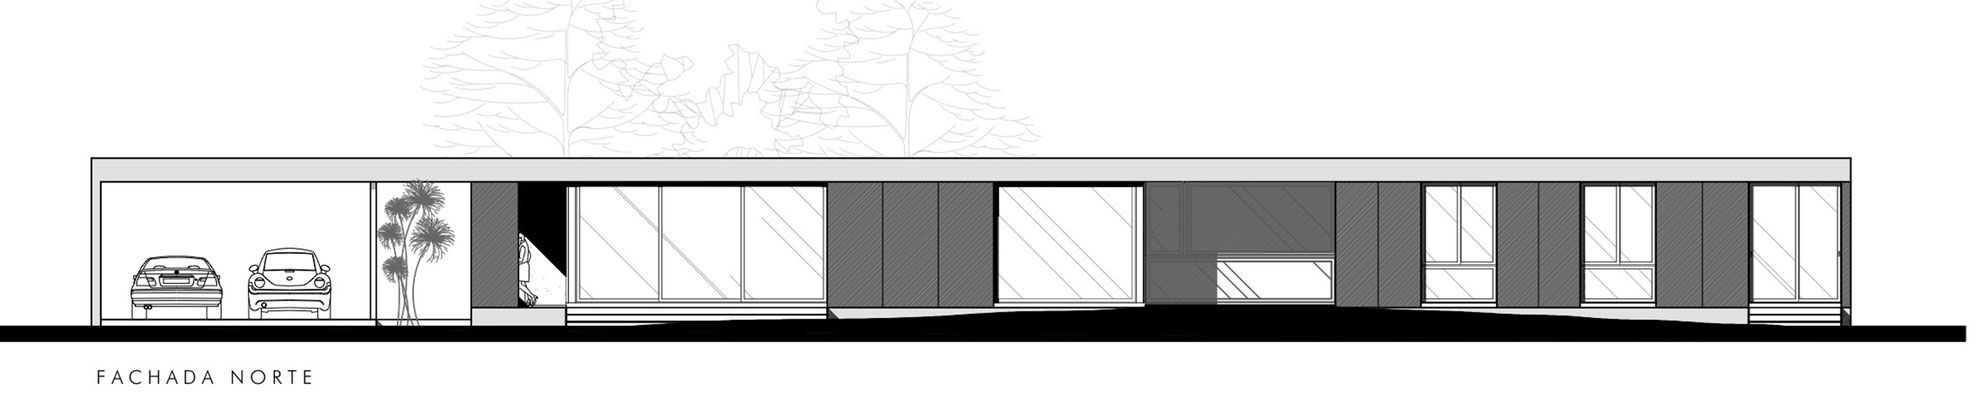 Linear-House-18